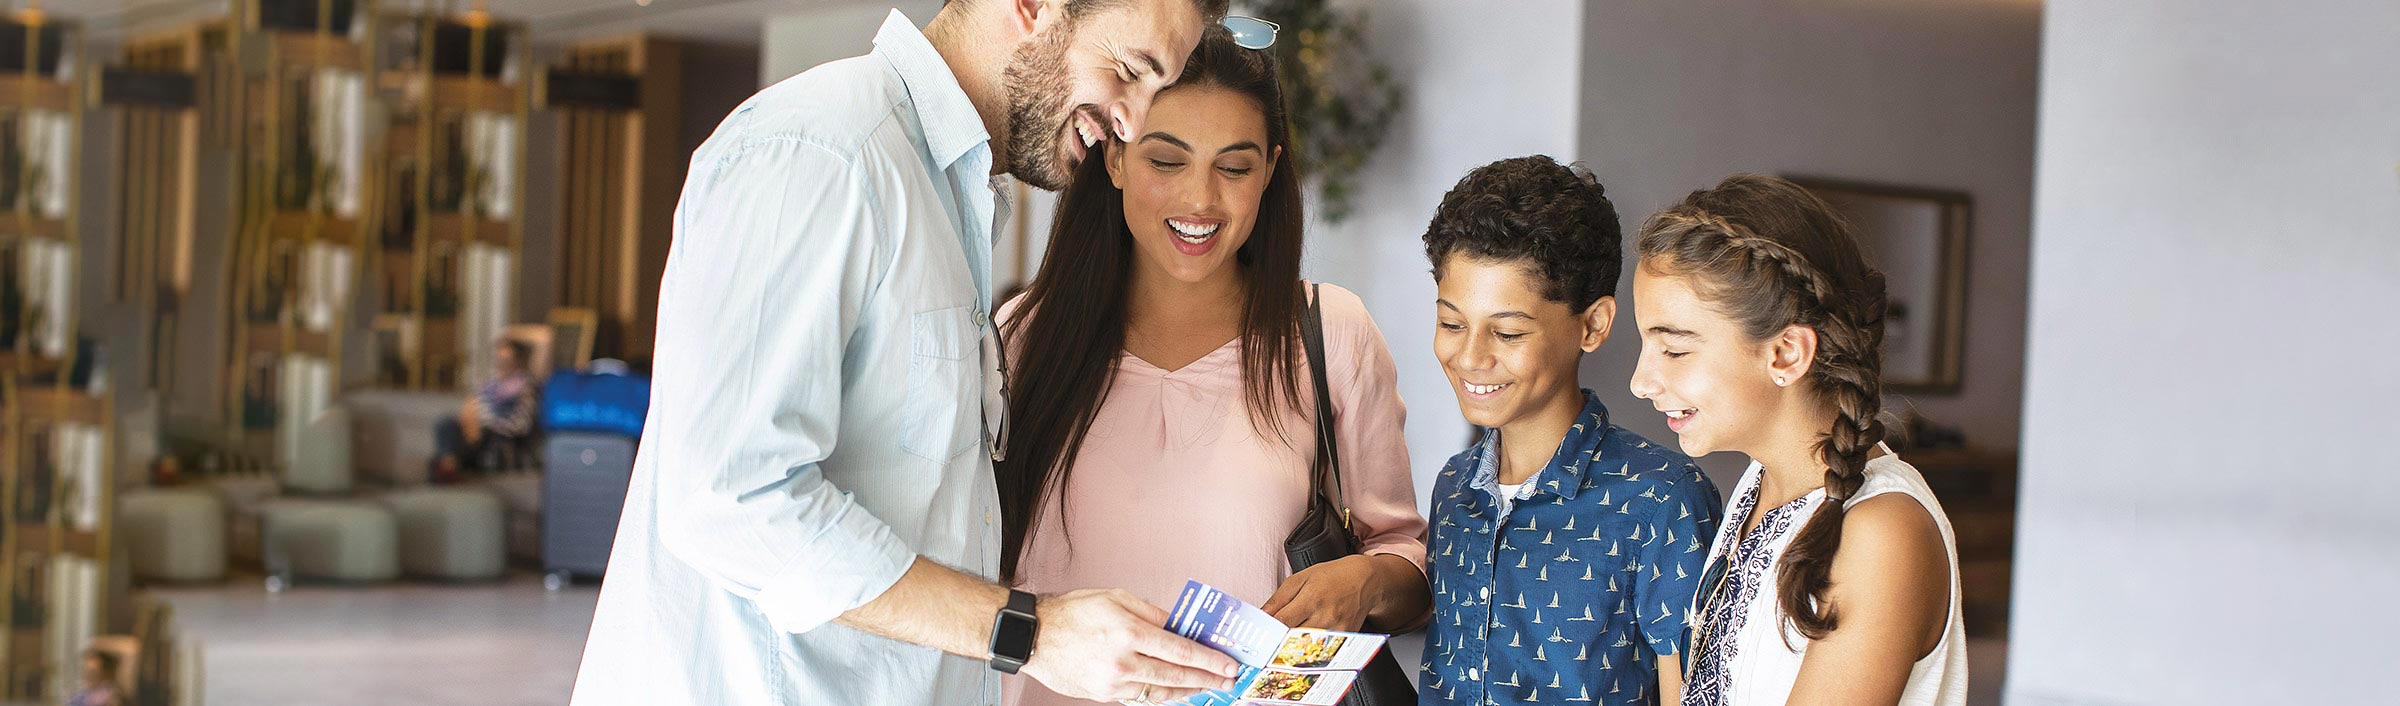 Familj med två barn som står i rum och tittar i broschyr